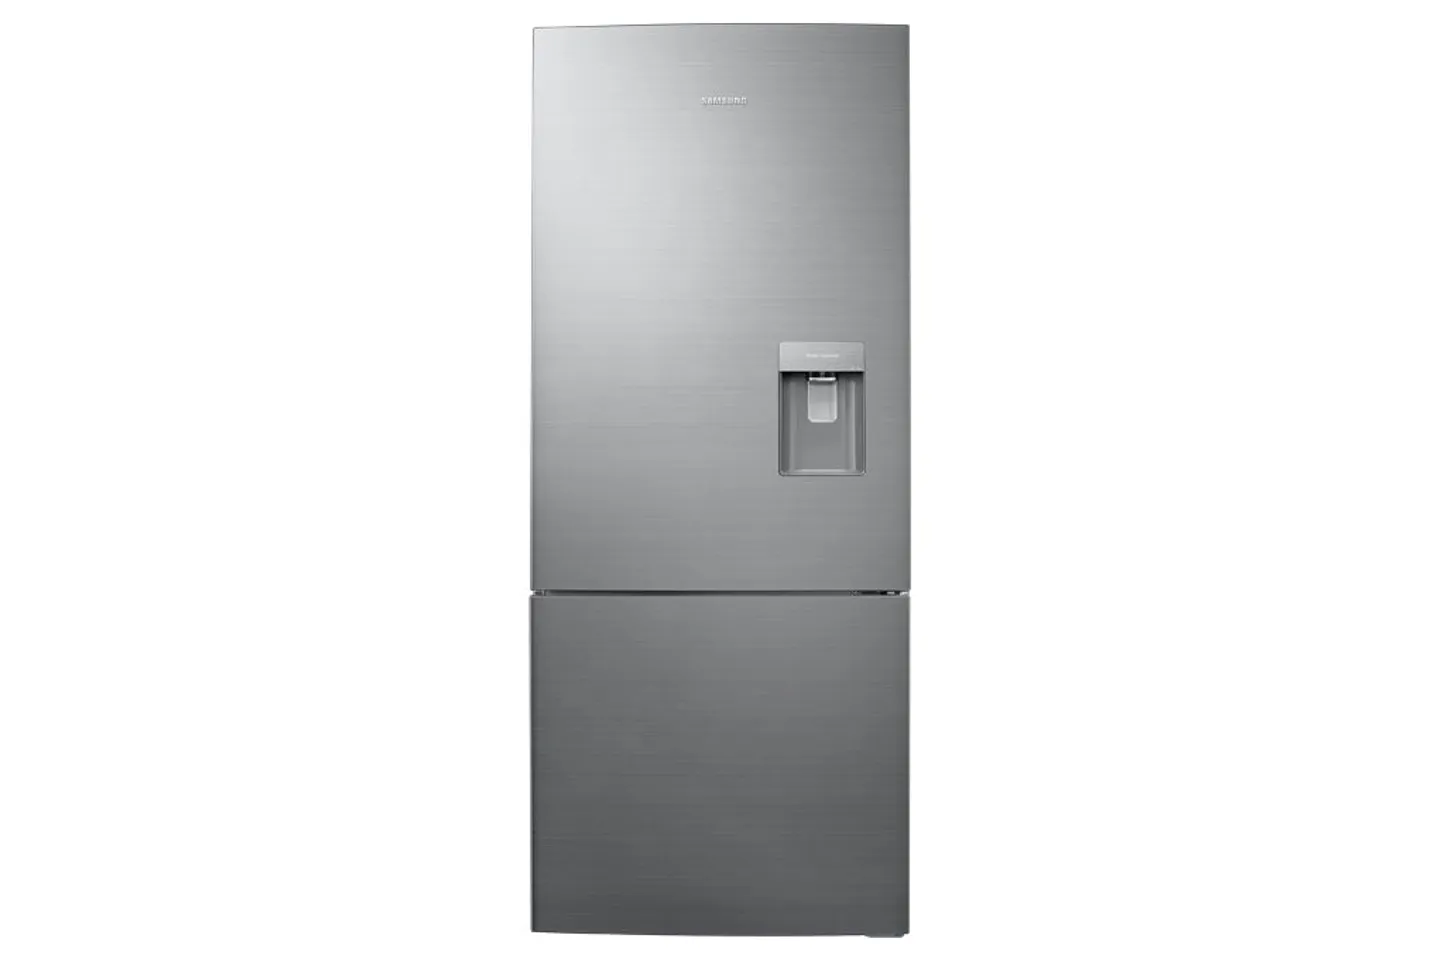 Tủ lạnh Samsung RL4034SBAS8/SV ngăn đá dưới 424 lít